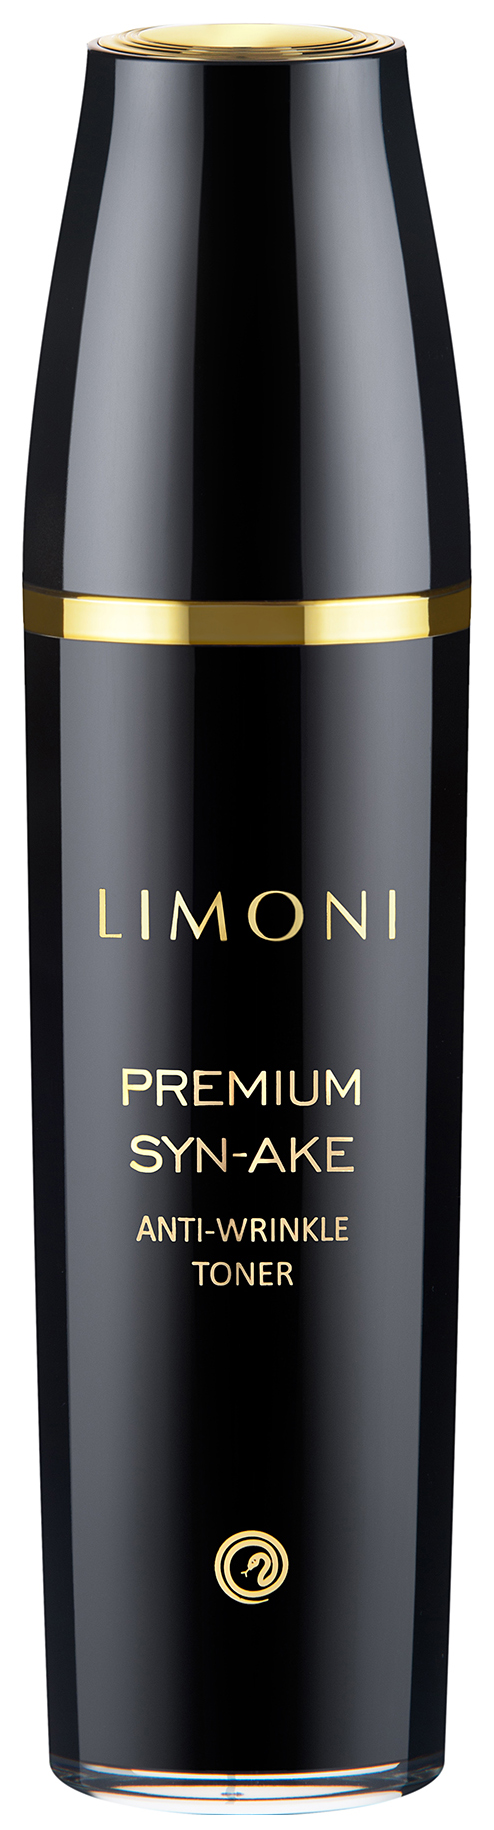 Тонер для лица Limoni Premium Syn-Ake Anti-Wrinkle Toner 120 мл limoni тонер для лица антивозрастной со змеиным ядом экстрактом ласточкиного гнезда и витамином е 120